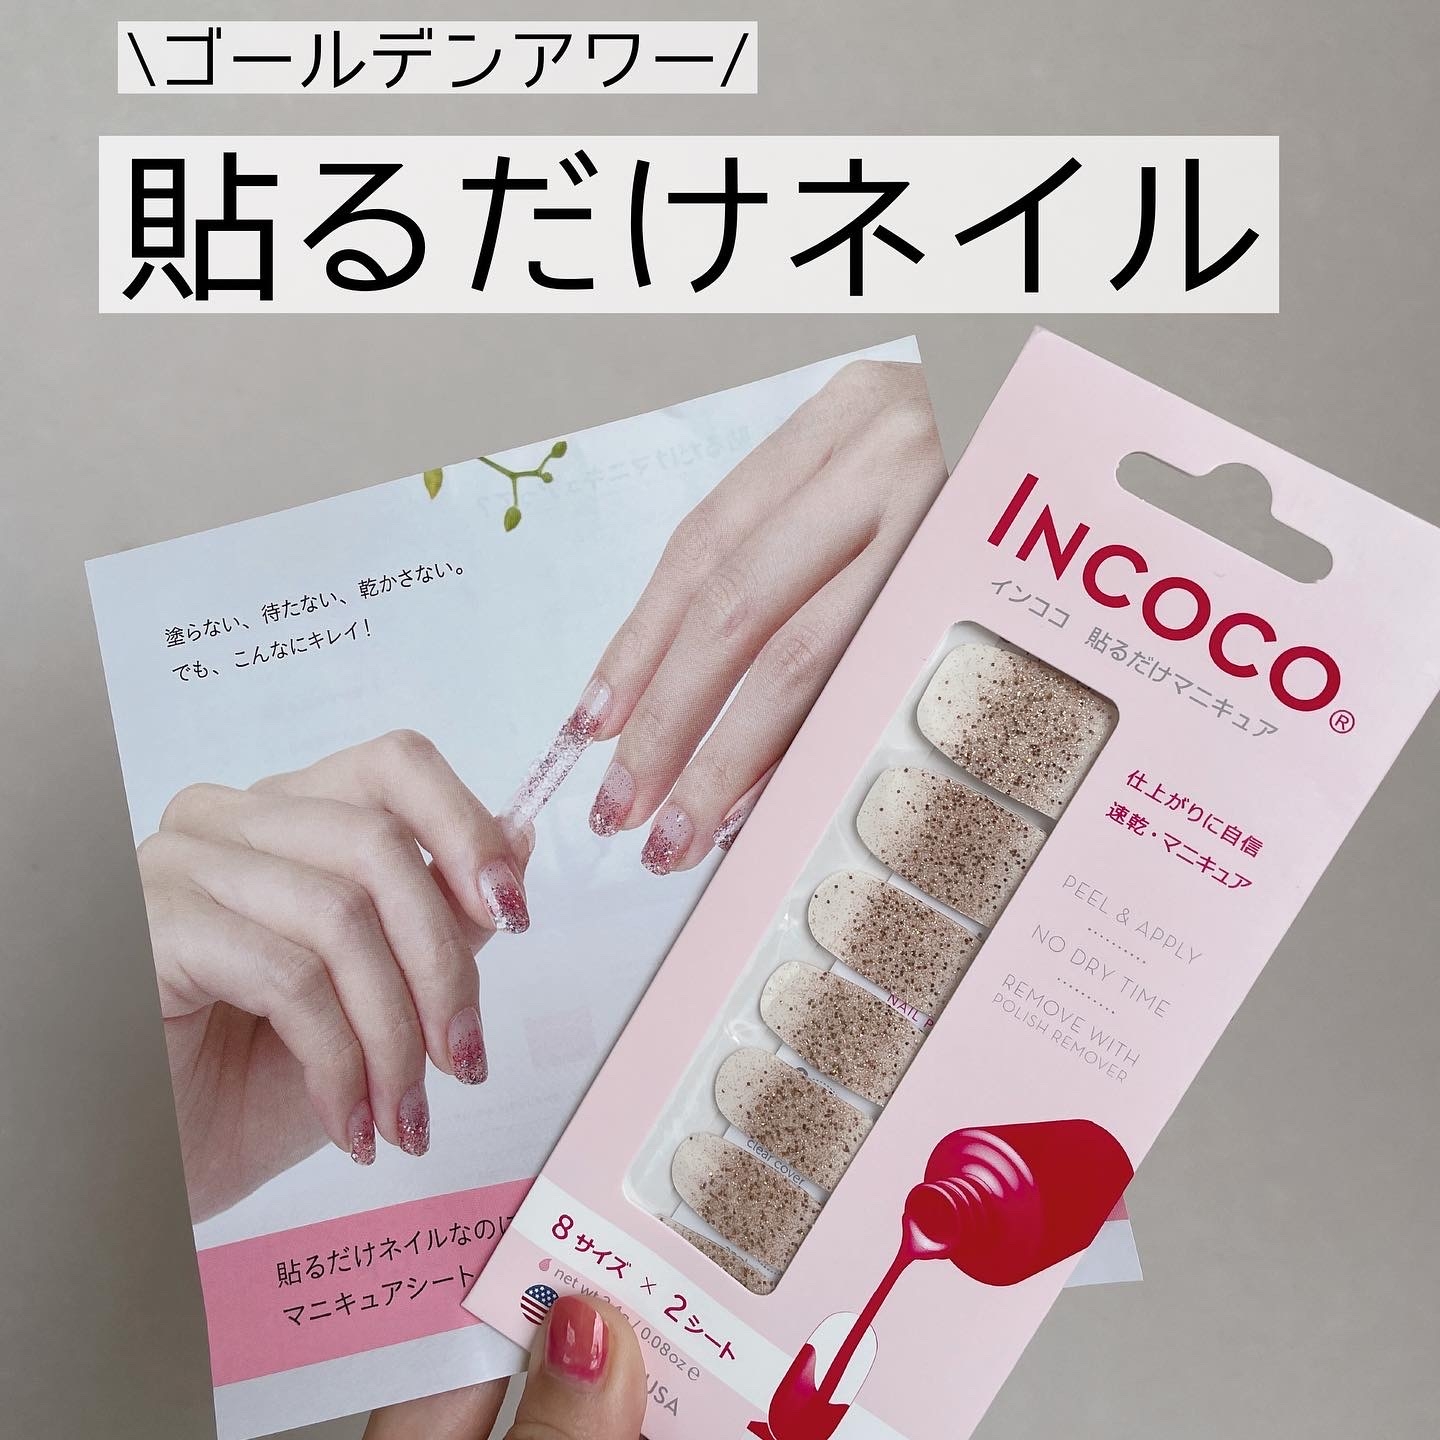 INCOCO(インココ) マニキュアシートの良い点・メリットに関するなゆさんの口コミ画像1